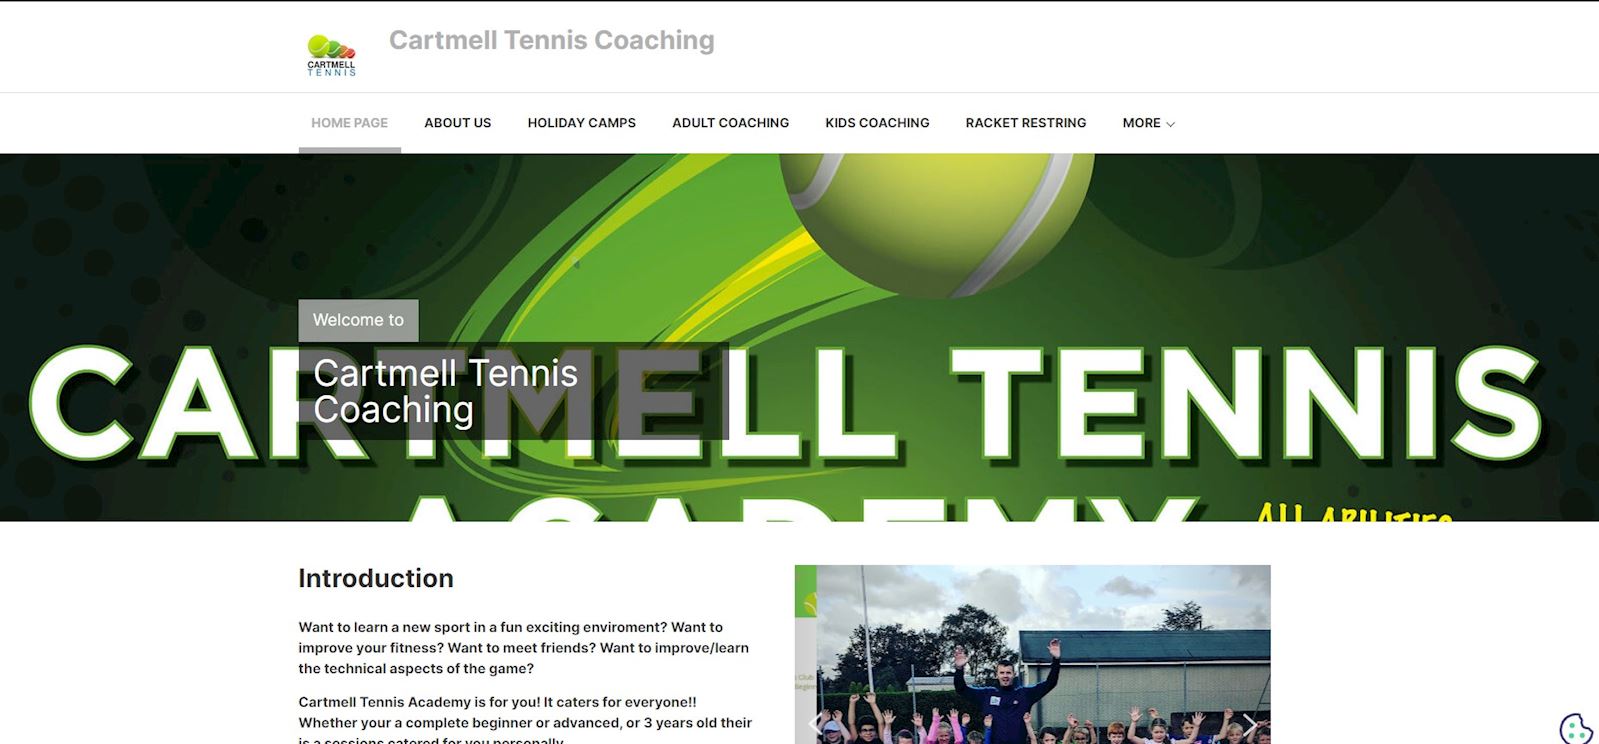 Cartmell Tennis Academy